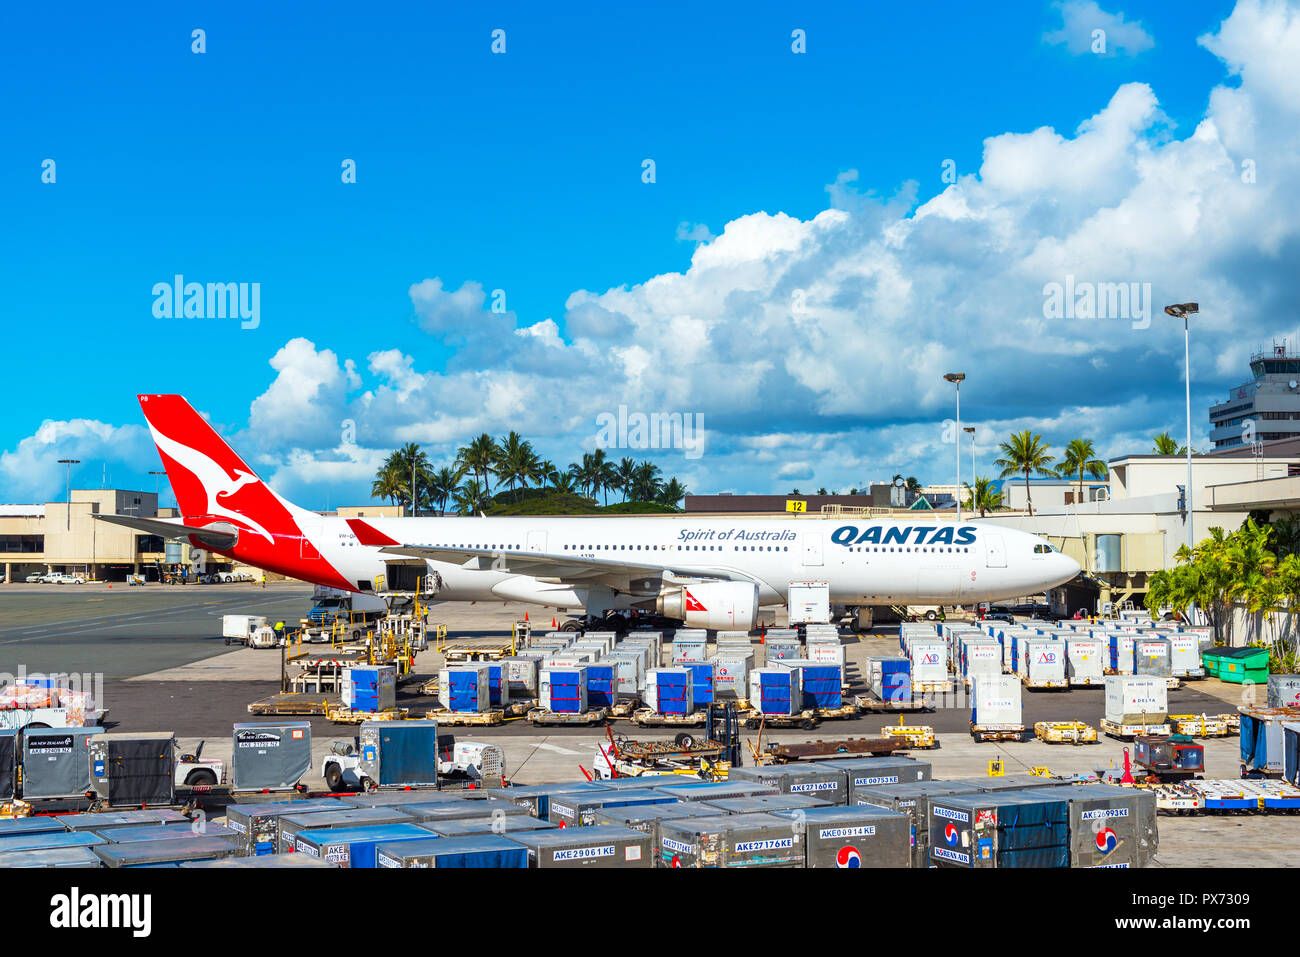 HONOLULU, HAWAII - février 16, 2018 : avis de l'avion à l'aéroport. L'espace de copie pour le texte Banque D'Images